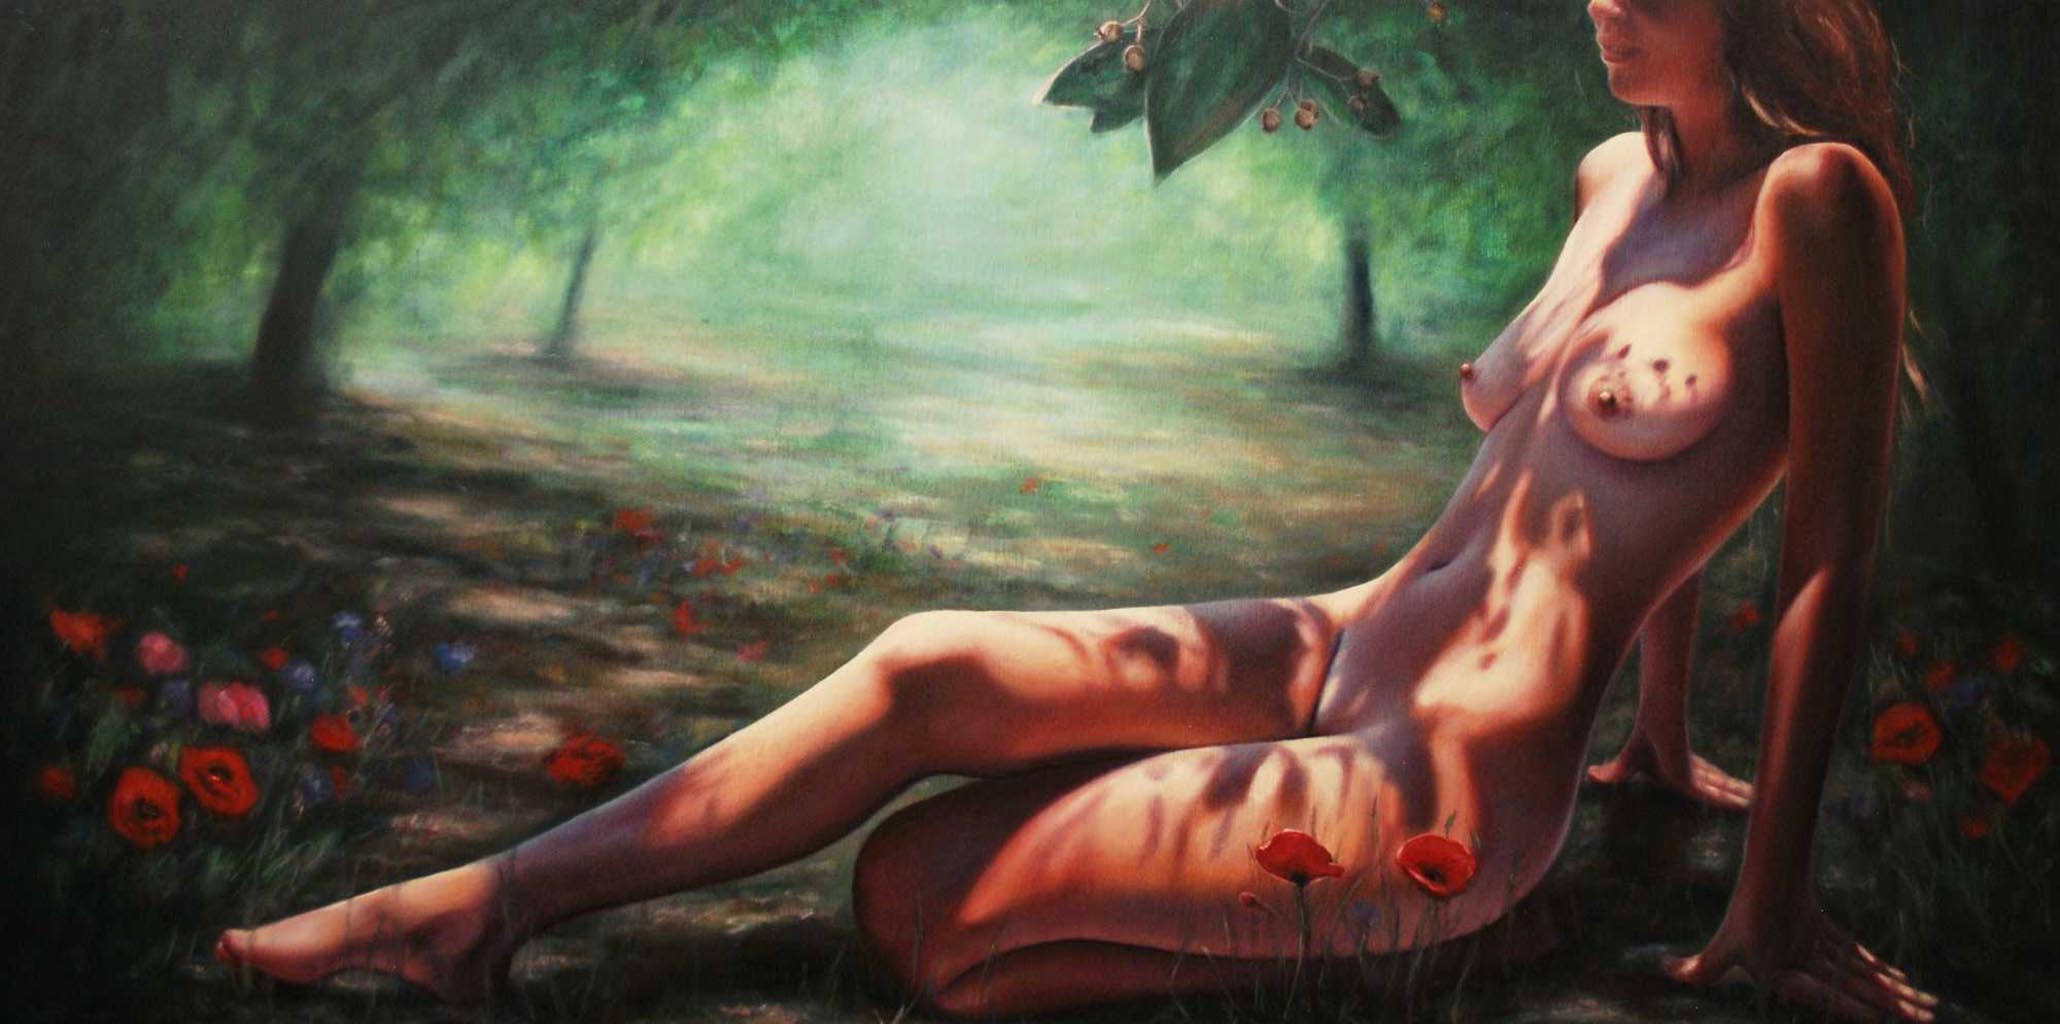 Explore nude art galleries from hegre art. 